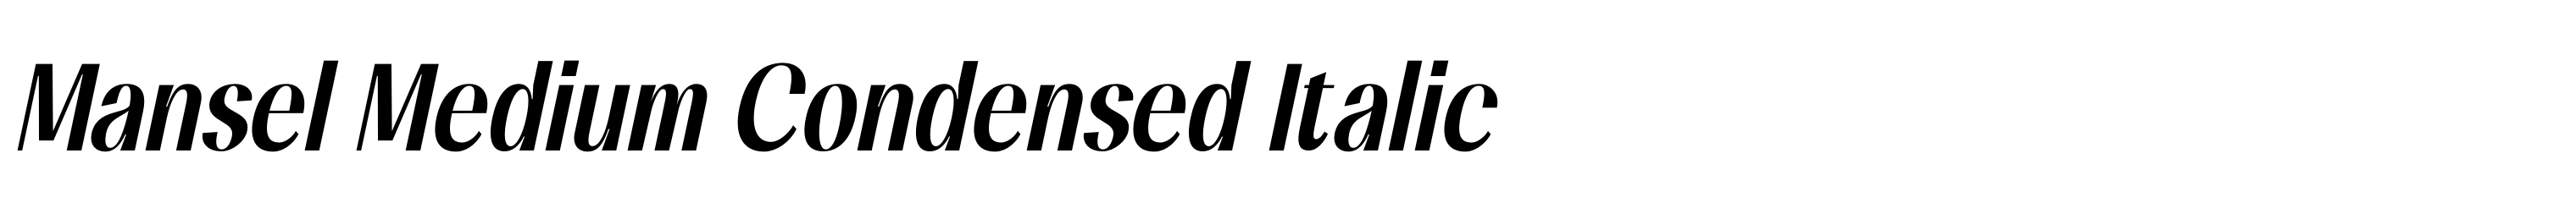 Mansel Medium Condensed Italic